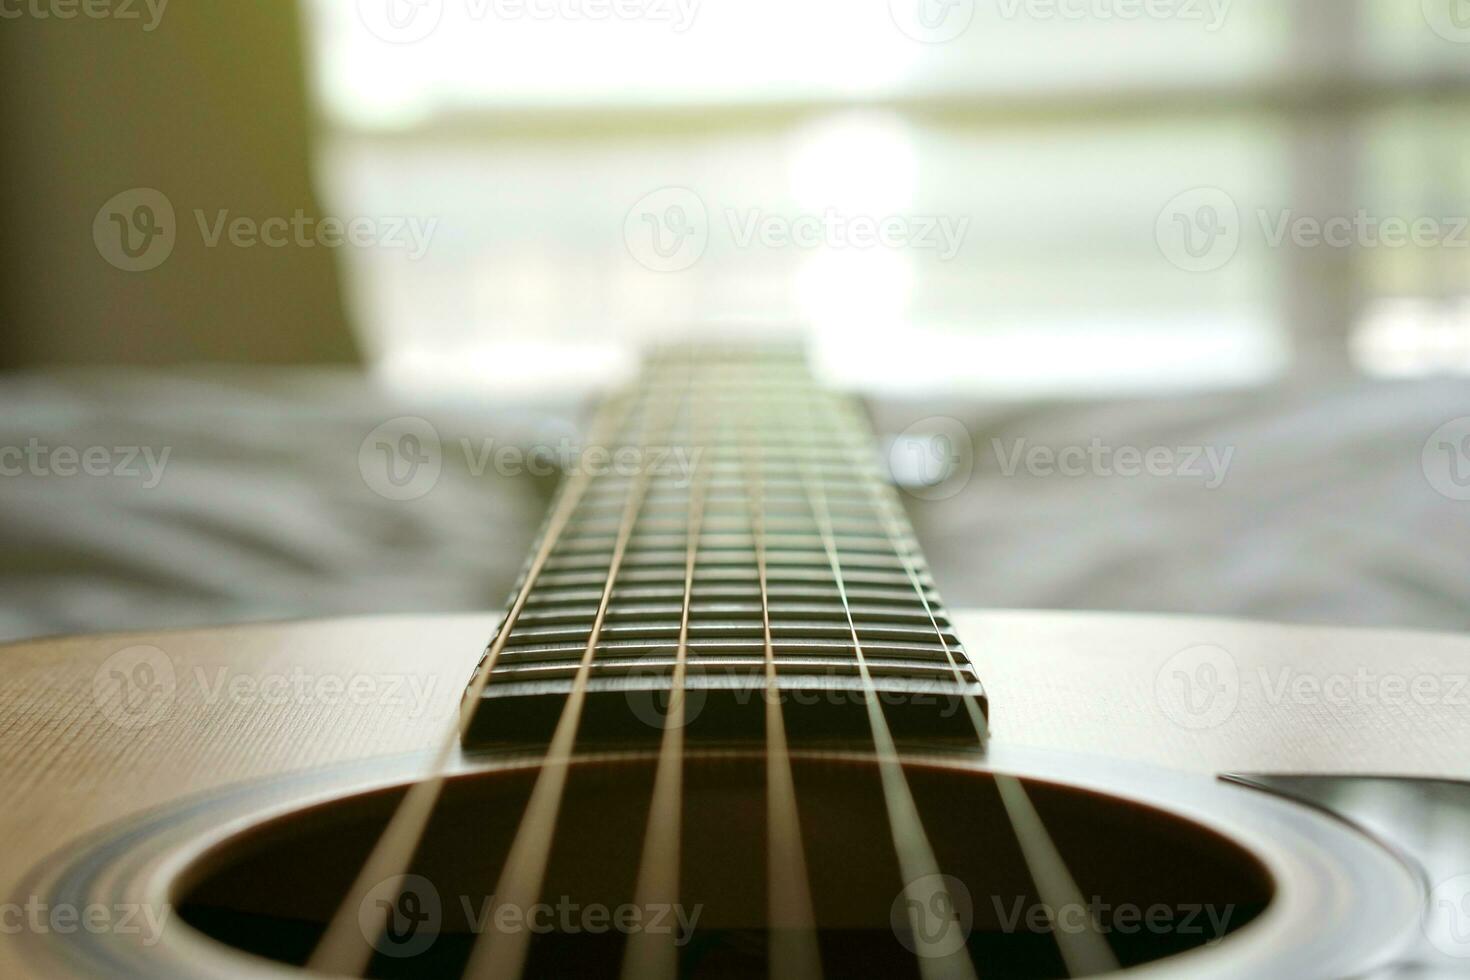 akoestisch gitaar, gebruikt naar Speel muziek- en notities, voor zingen een liedje, macro abstract foto